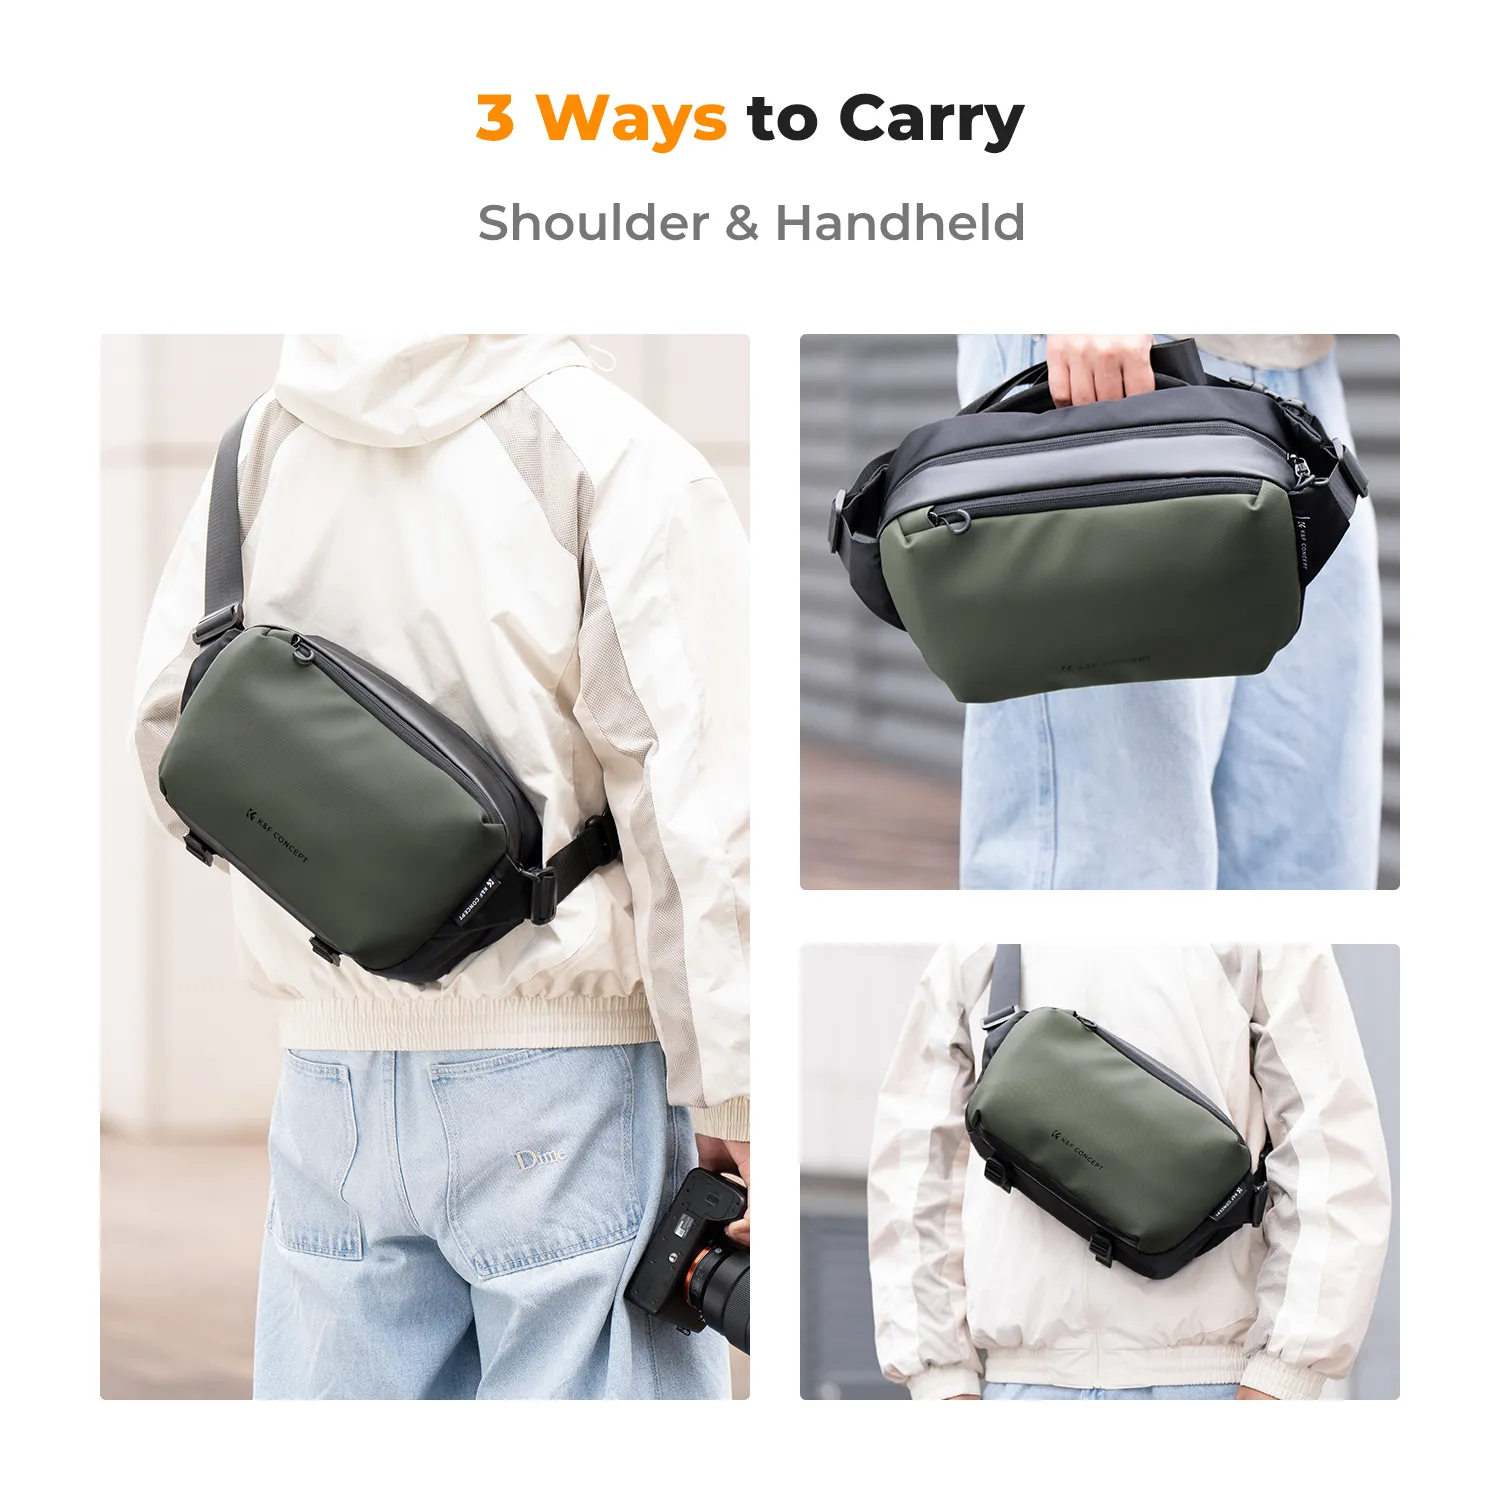 Túi đeo chéo K&F Concept Sling Bag 10L - KF13.157 (Black Green)